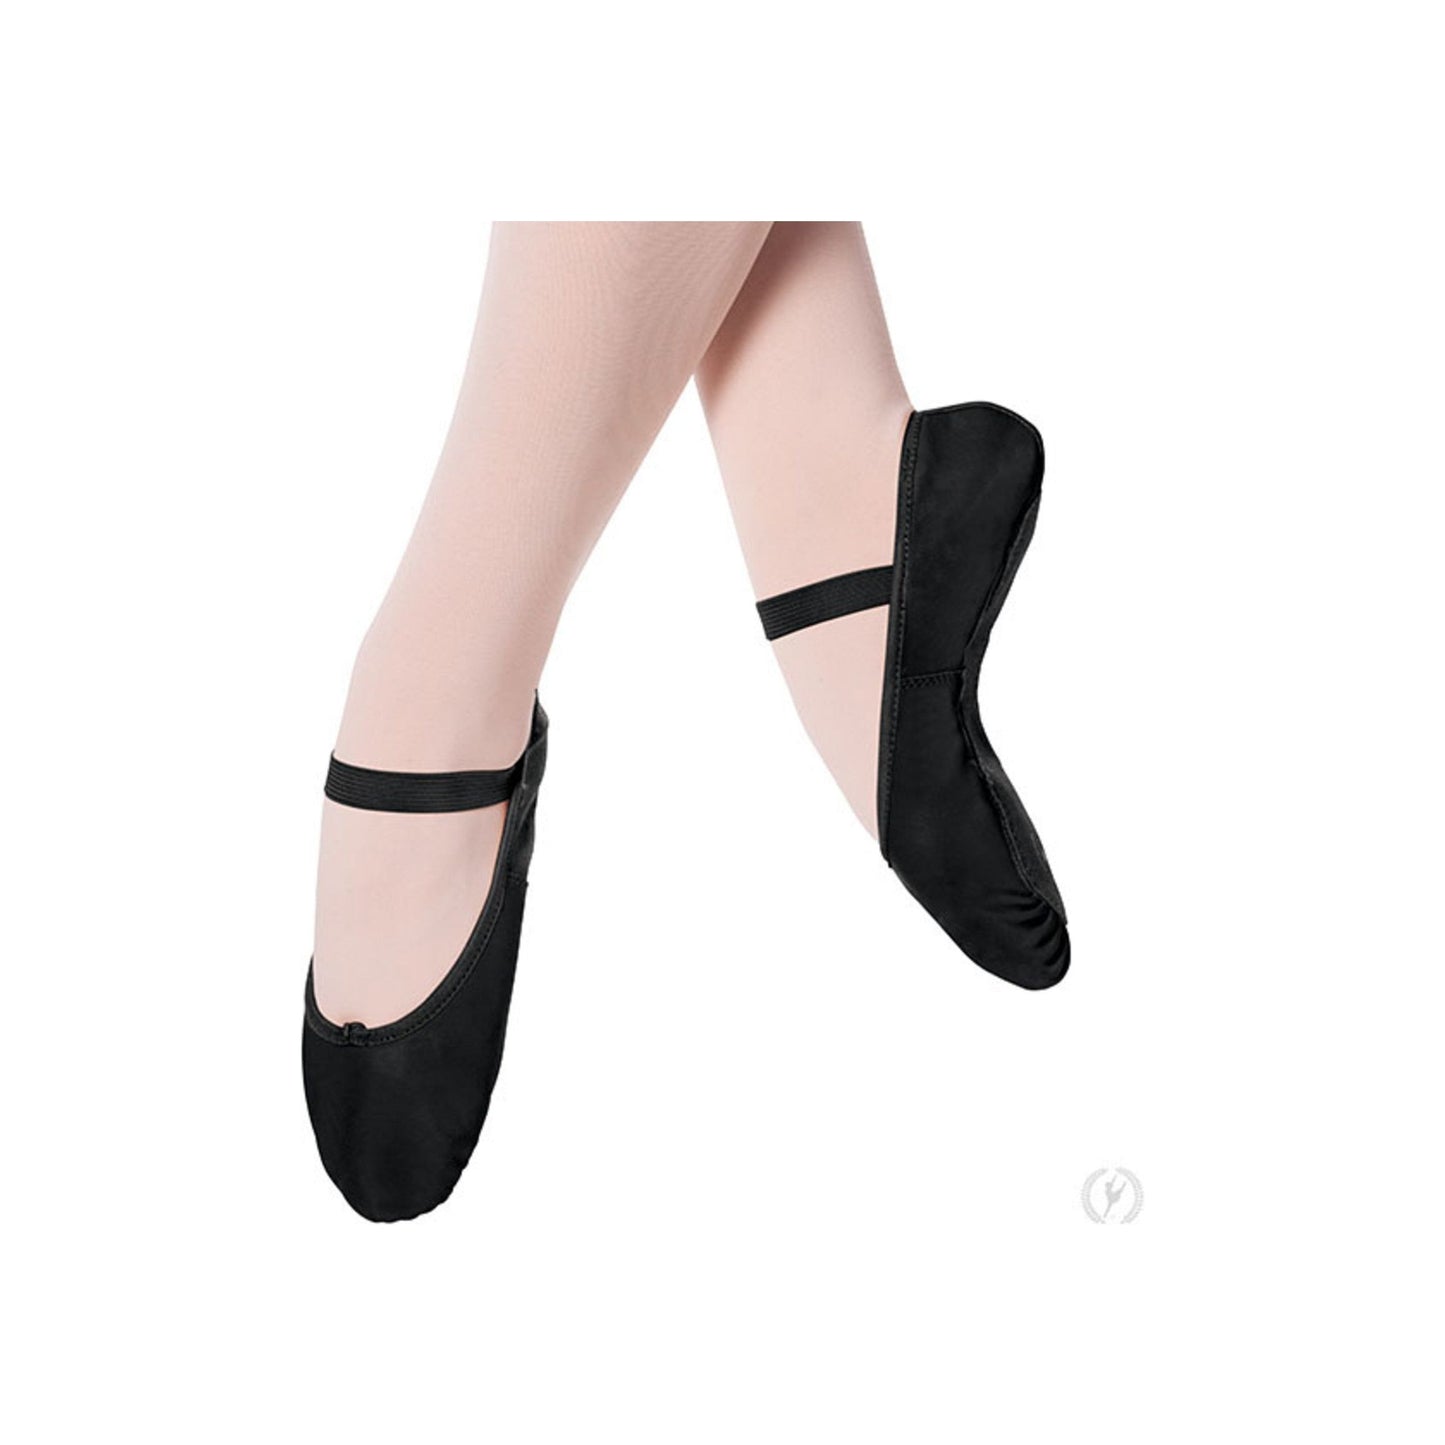 Tendu Leather Full Sole Ballet Slippers - BLACK